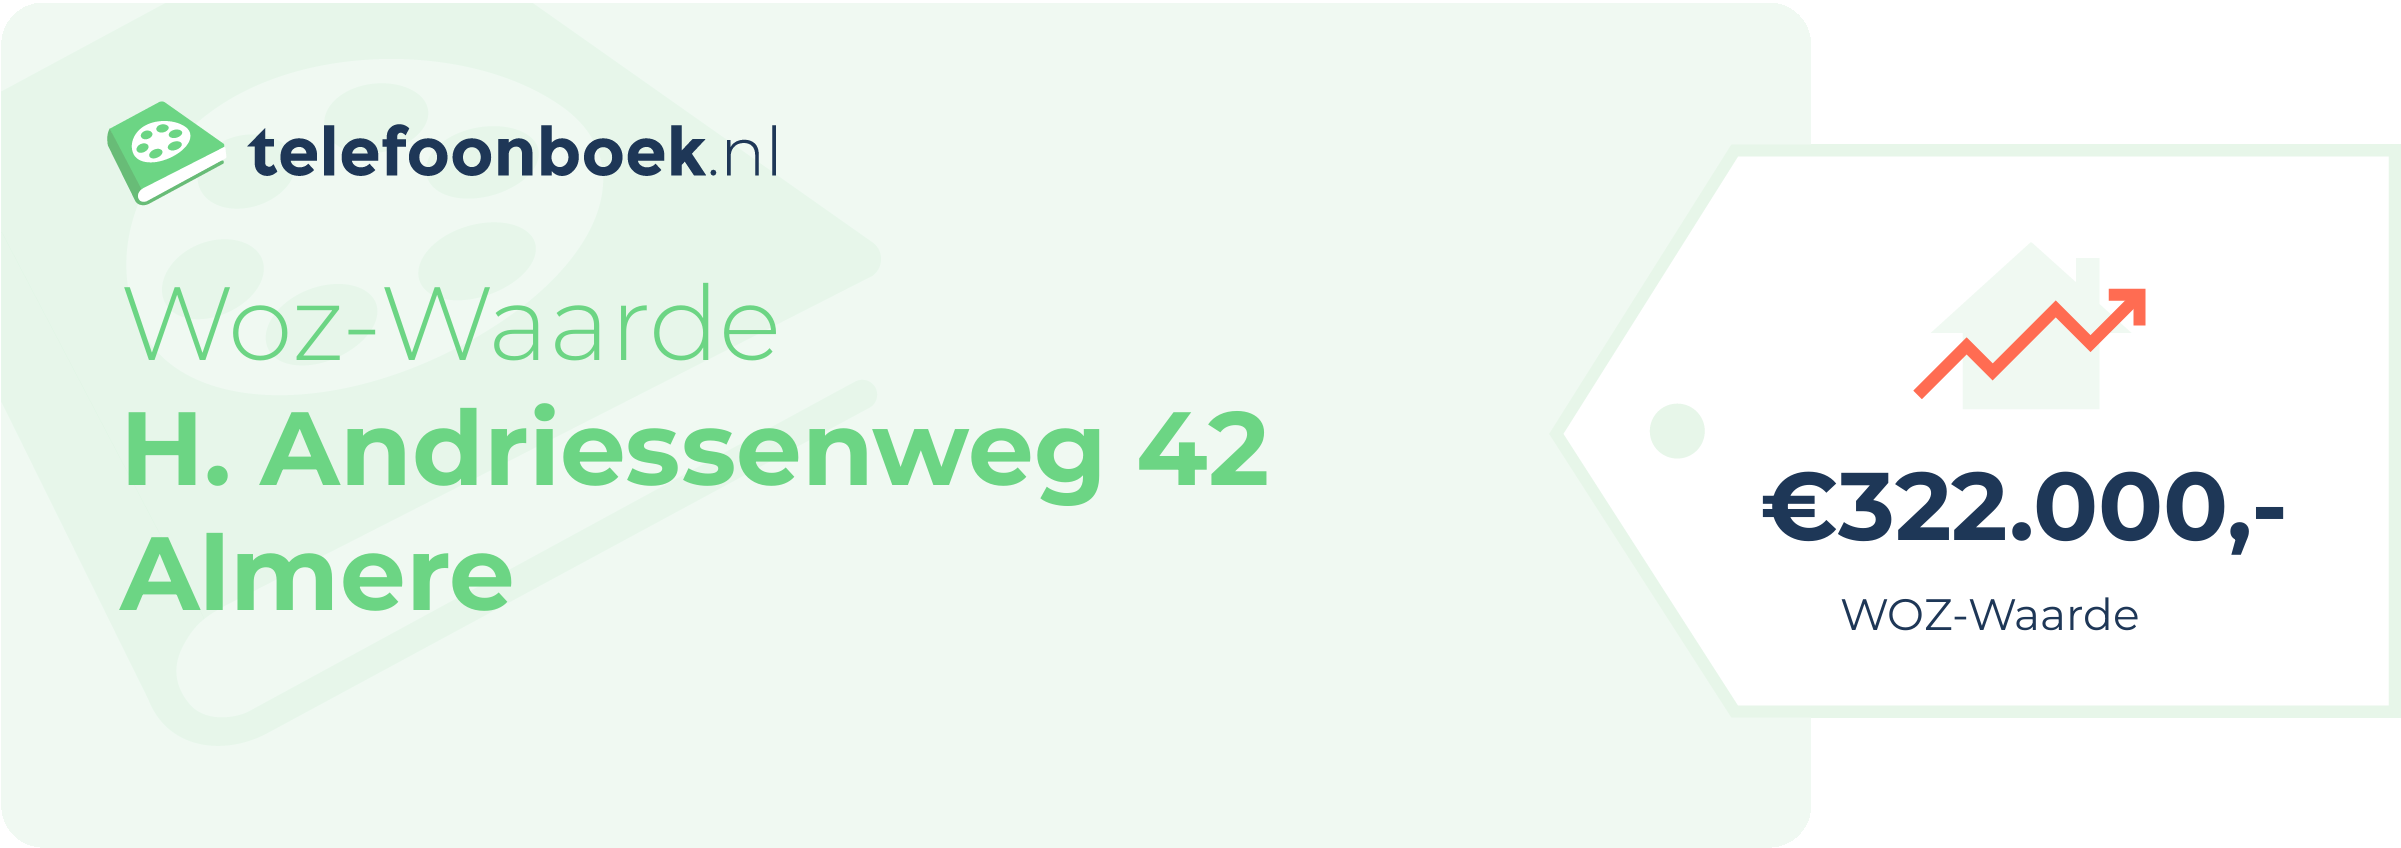 WOZ-waarde H. Andriessenweg 42 Almere